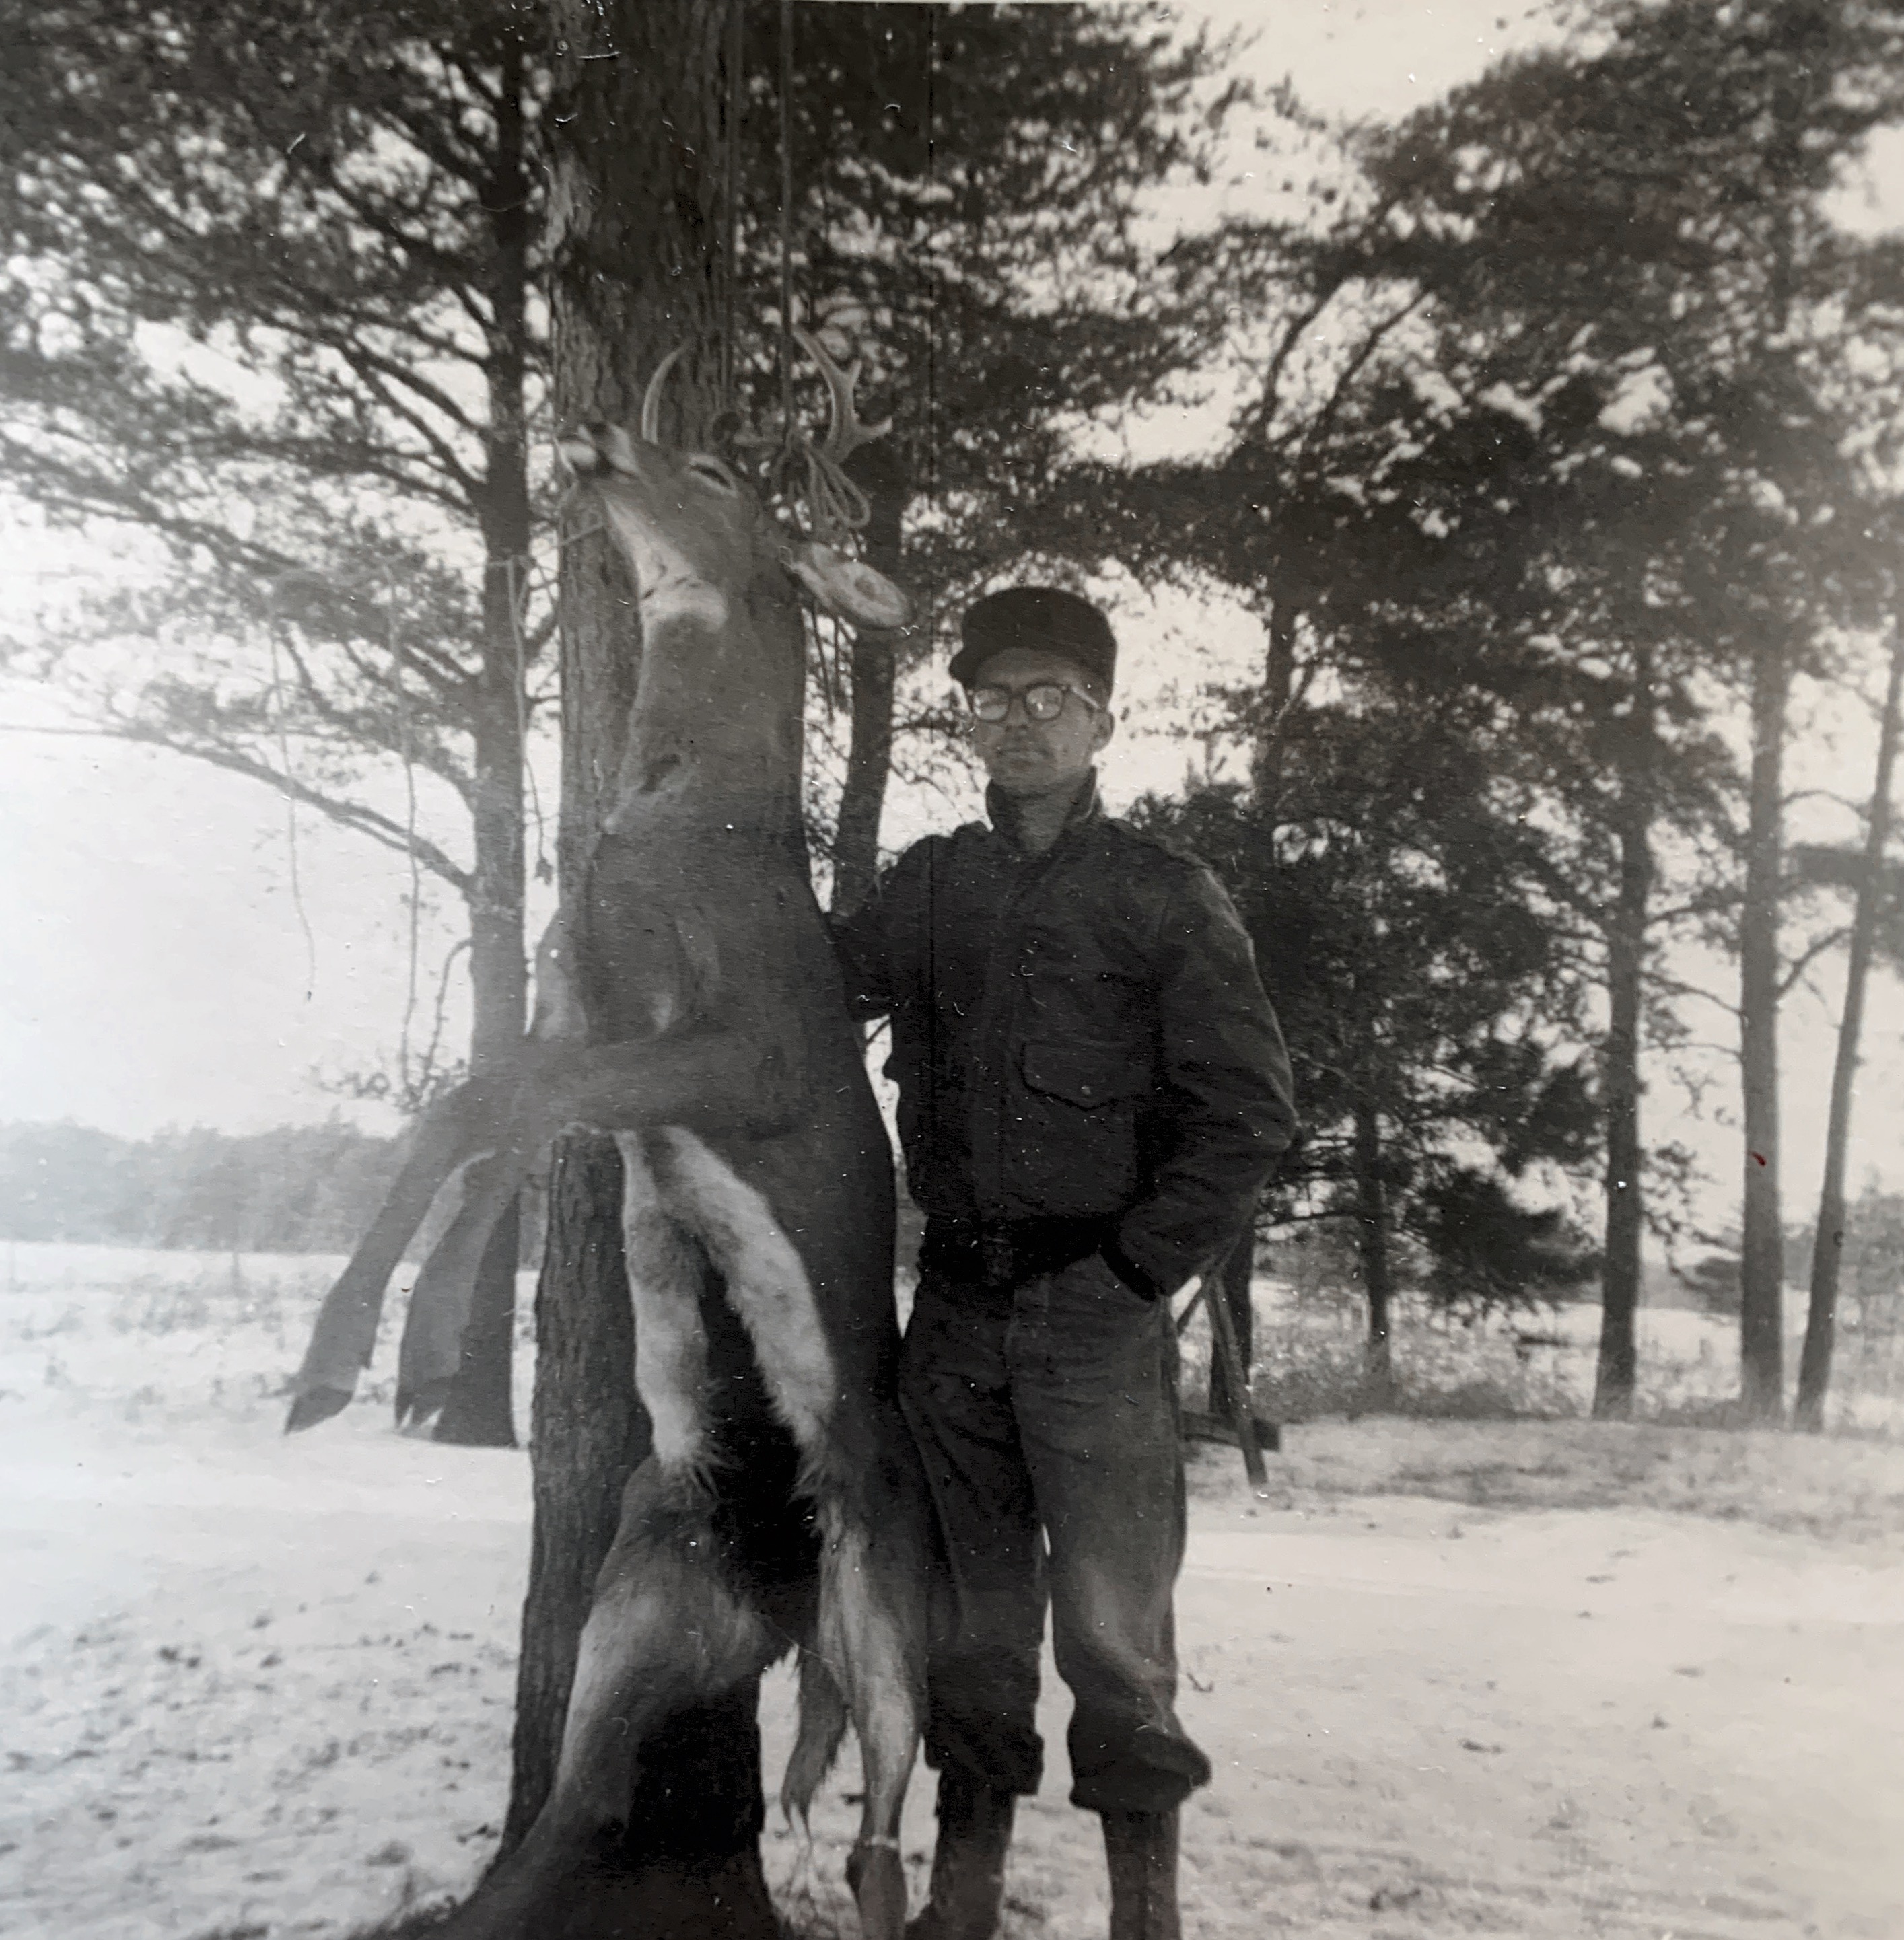 Dick with deer he shot Nov 1955